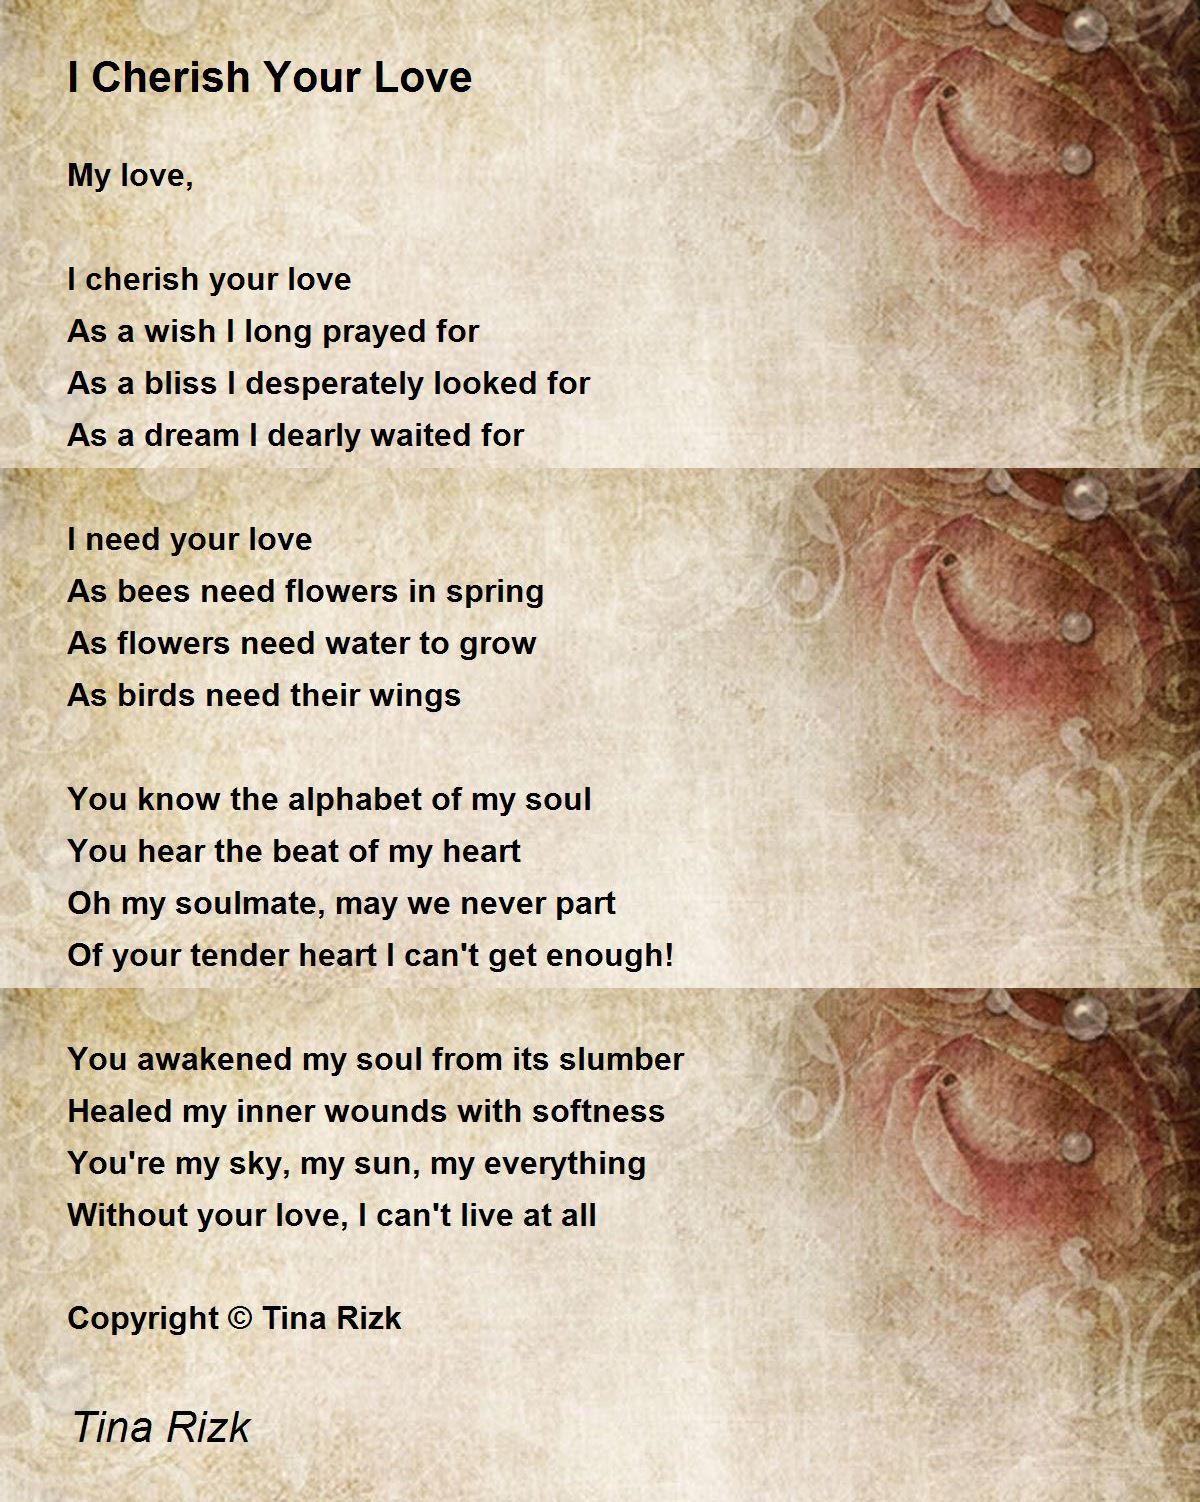 I Cherish Your Love - I Cherish Your Love Poem by Tina Rizk